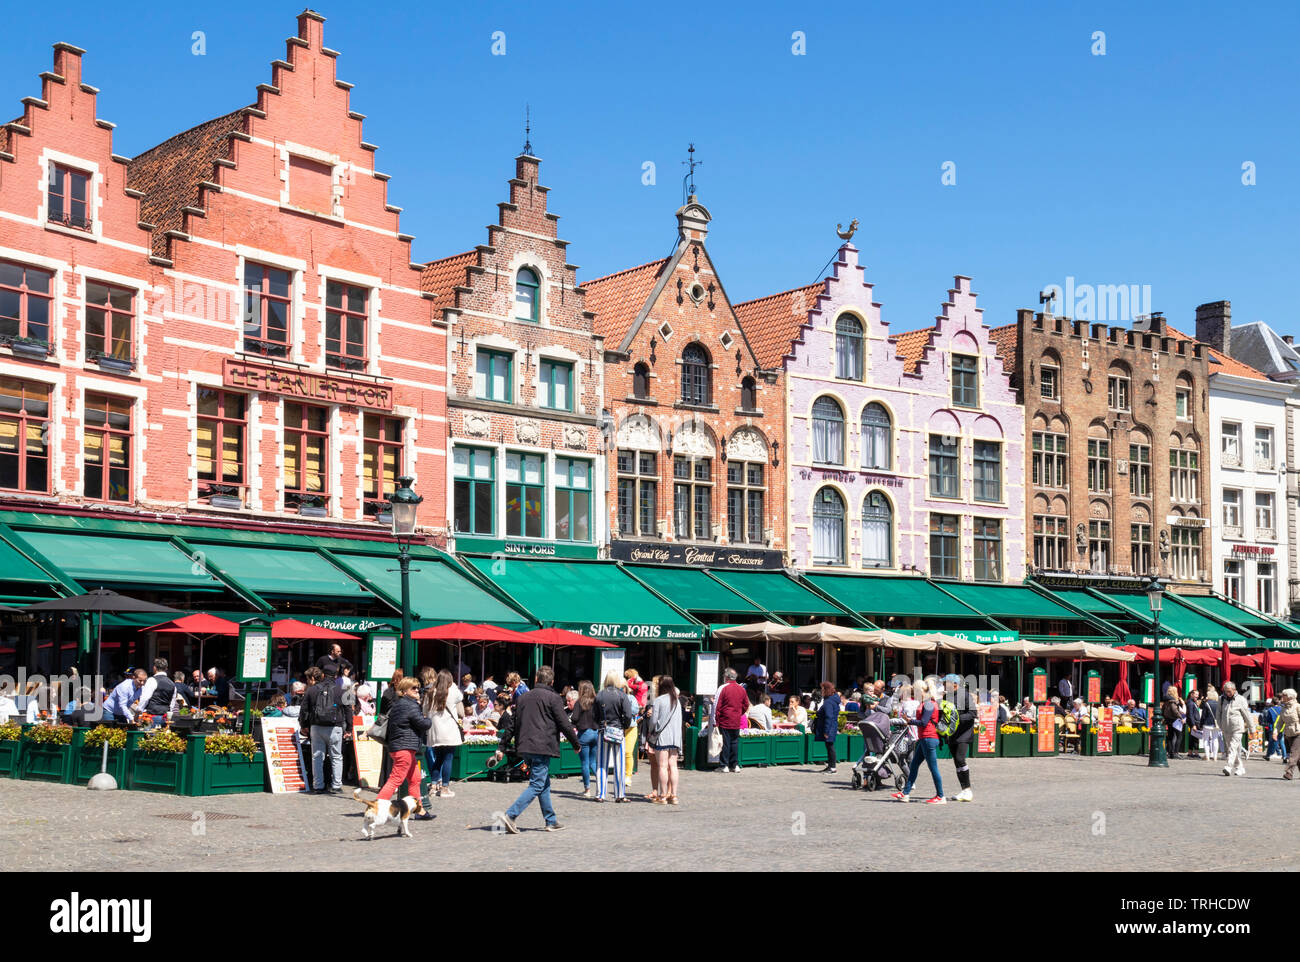 Alte Gebäude jetzt Cafés und Restaurants mit verzierten Giebeln in dem historischen Marktplatz Der Marktplatz im Zentrum von Brügge Belgien Westflandern EU Europa Stockfoto